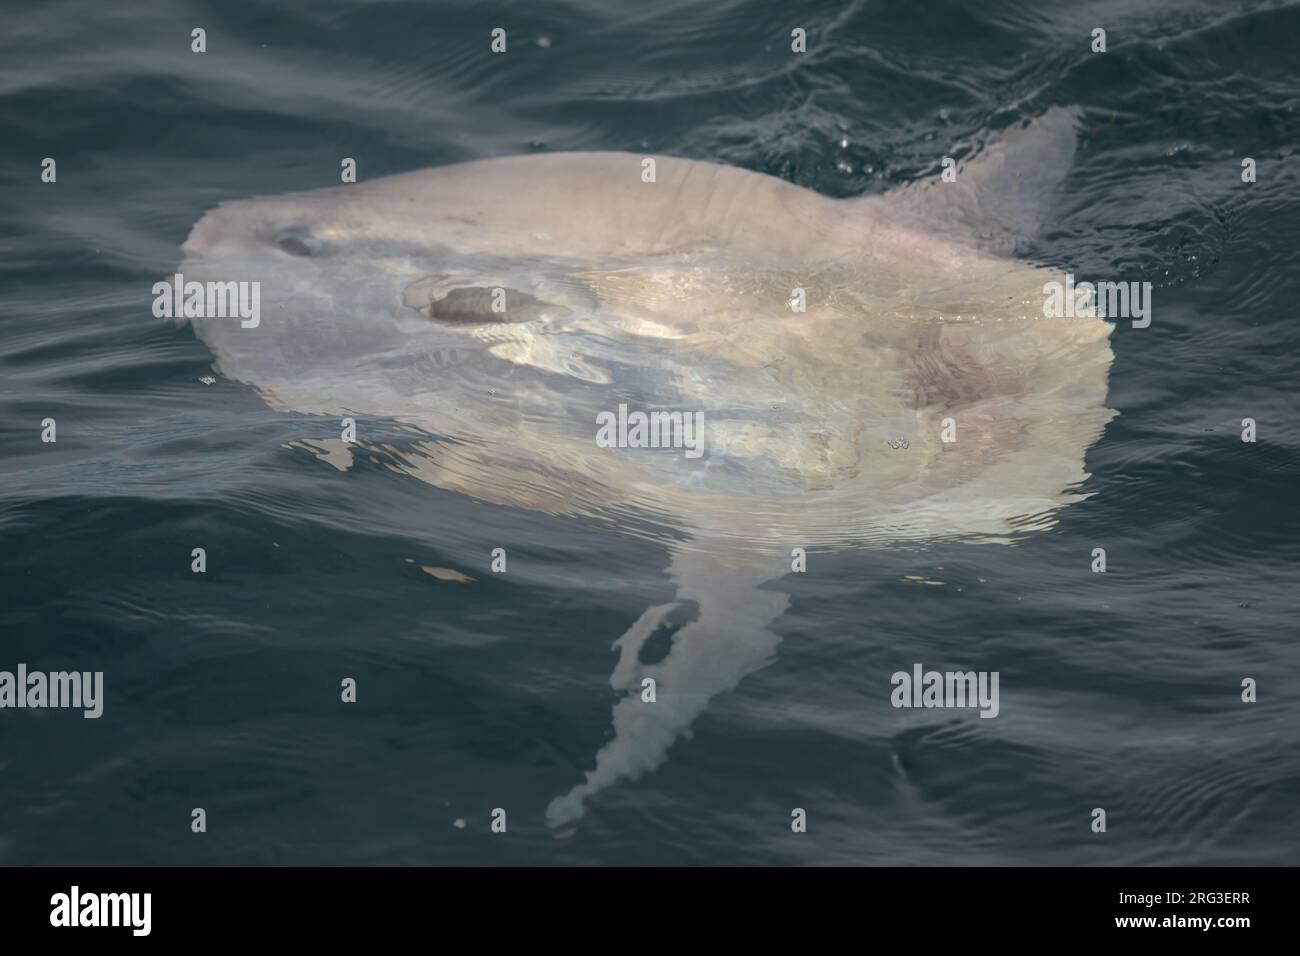 Ocean sunfish (Mola mola) at the surface. Stock Photo